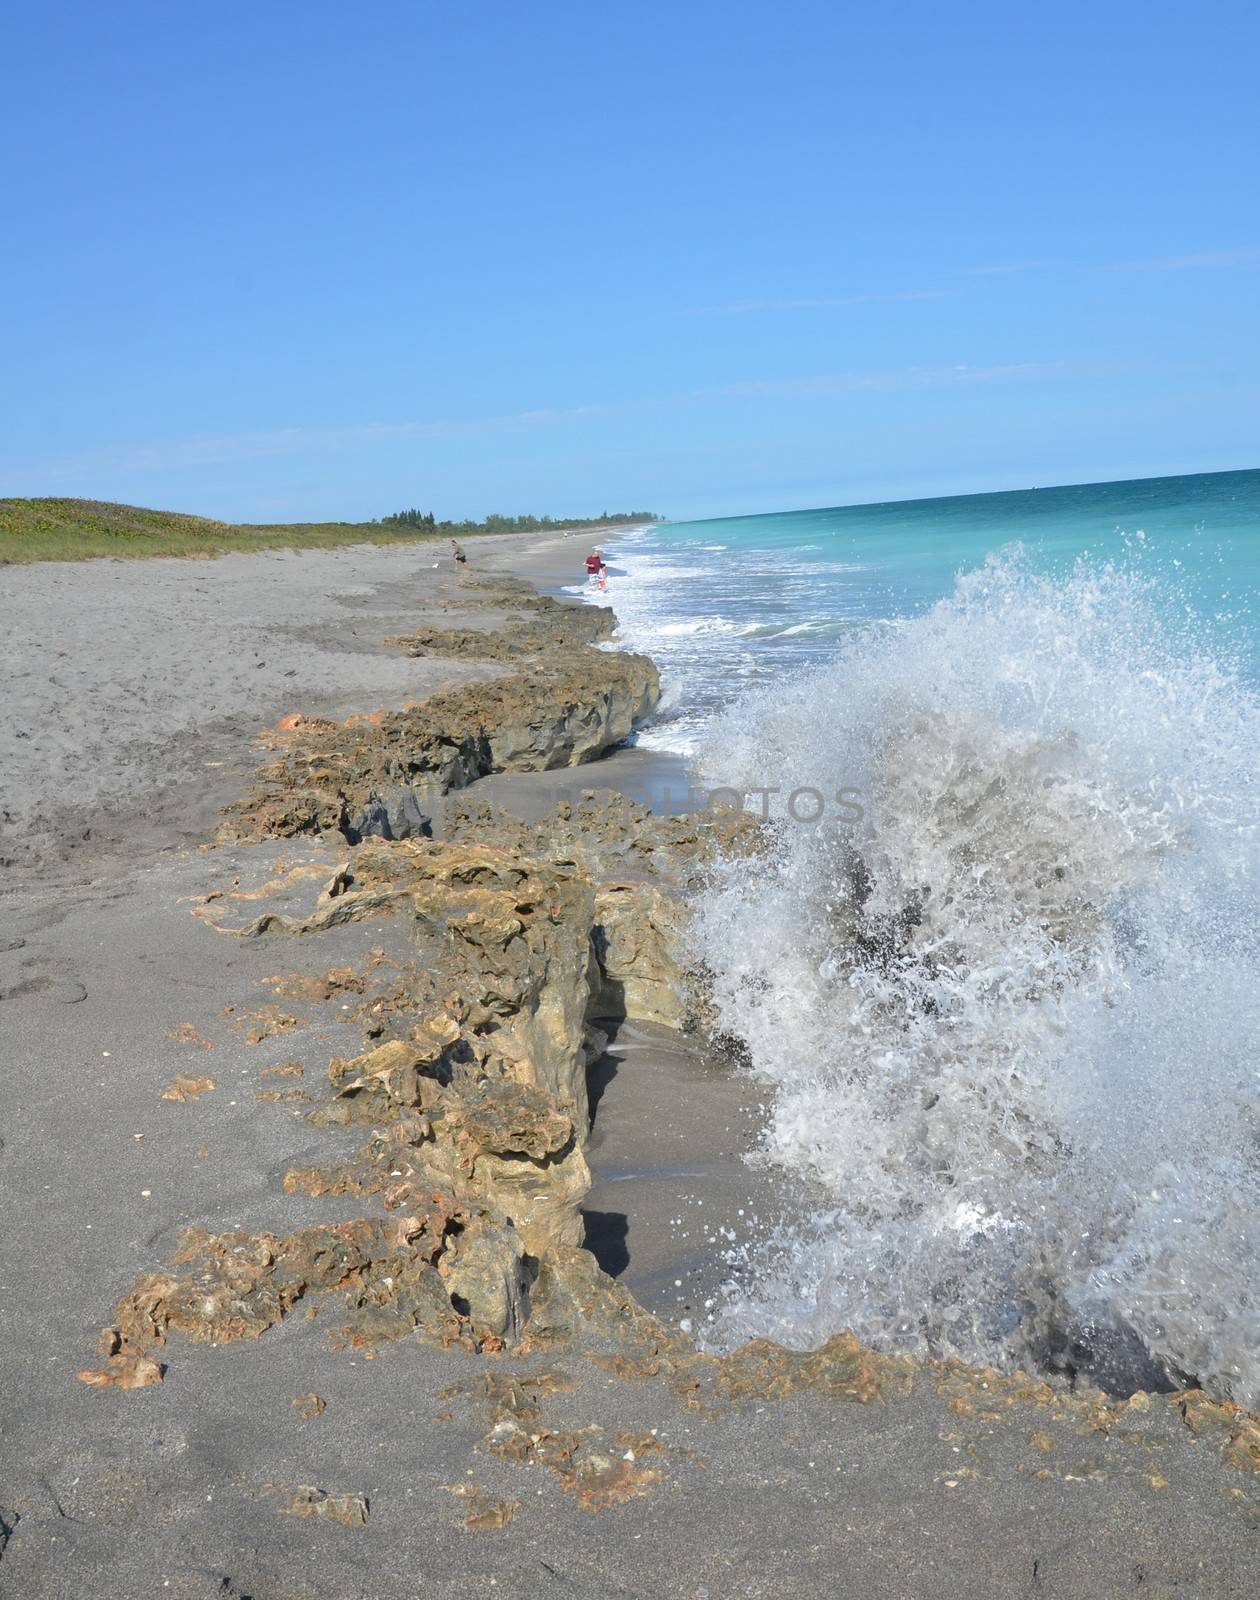 blue ocean water splashing on dirty rocks on the beach by stockphotofan1